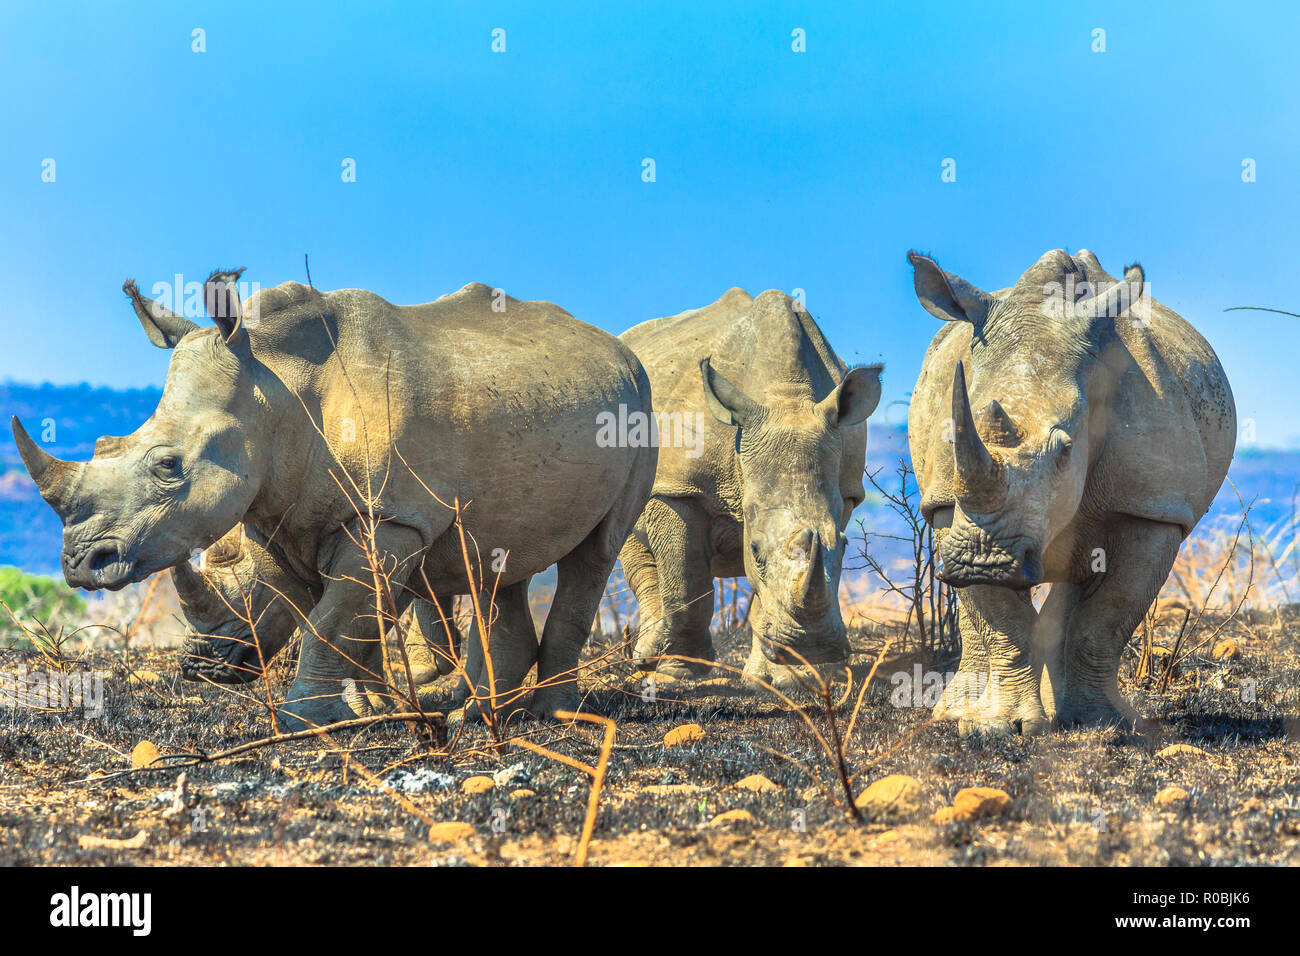 Quattro adulti il rinoceronte bianco in piedi nella savana di Hluhluwe-Imfolozi Park, Sud Africa. La riserva di caccia di Umfolozi ha la più alta concentrazione di rinoceronti nel mondo. Blue sky. Foto Stock